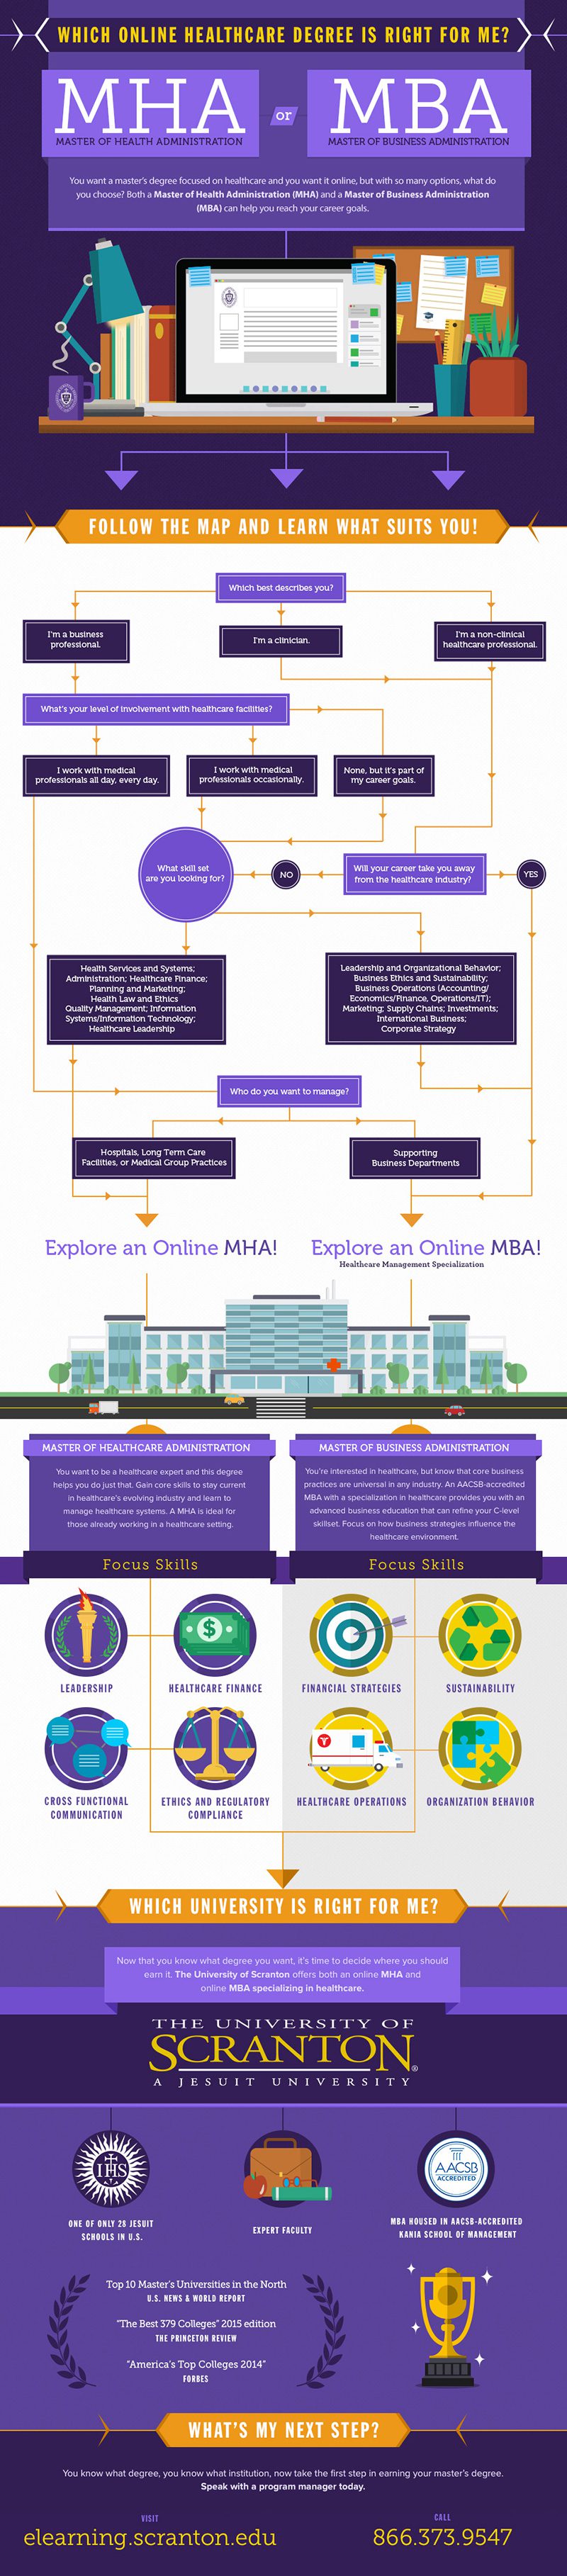 MBA-vs-MHA-Infographic-800x3635